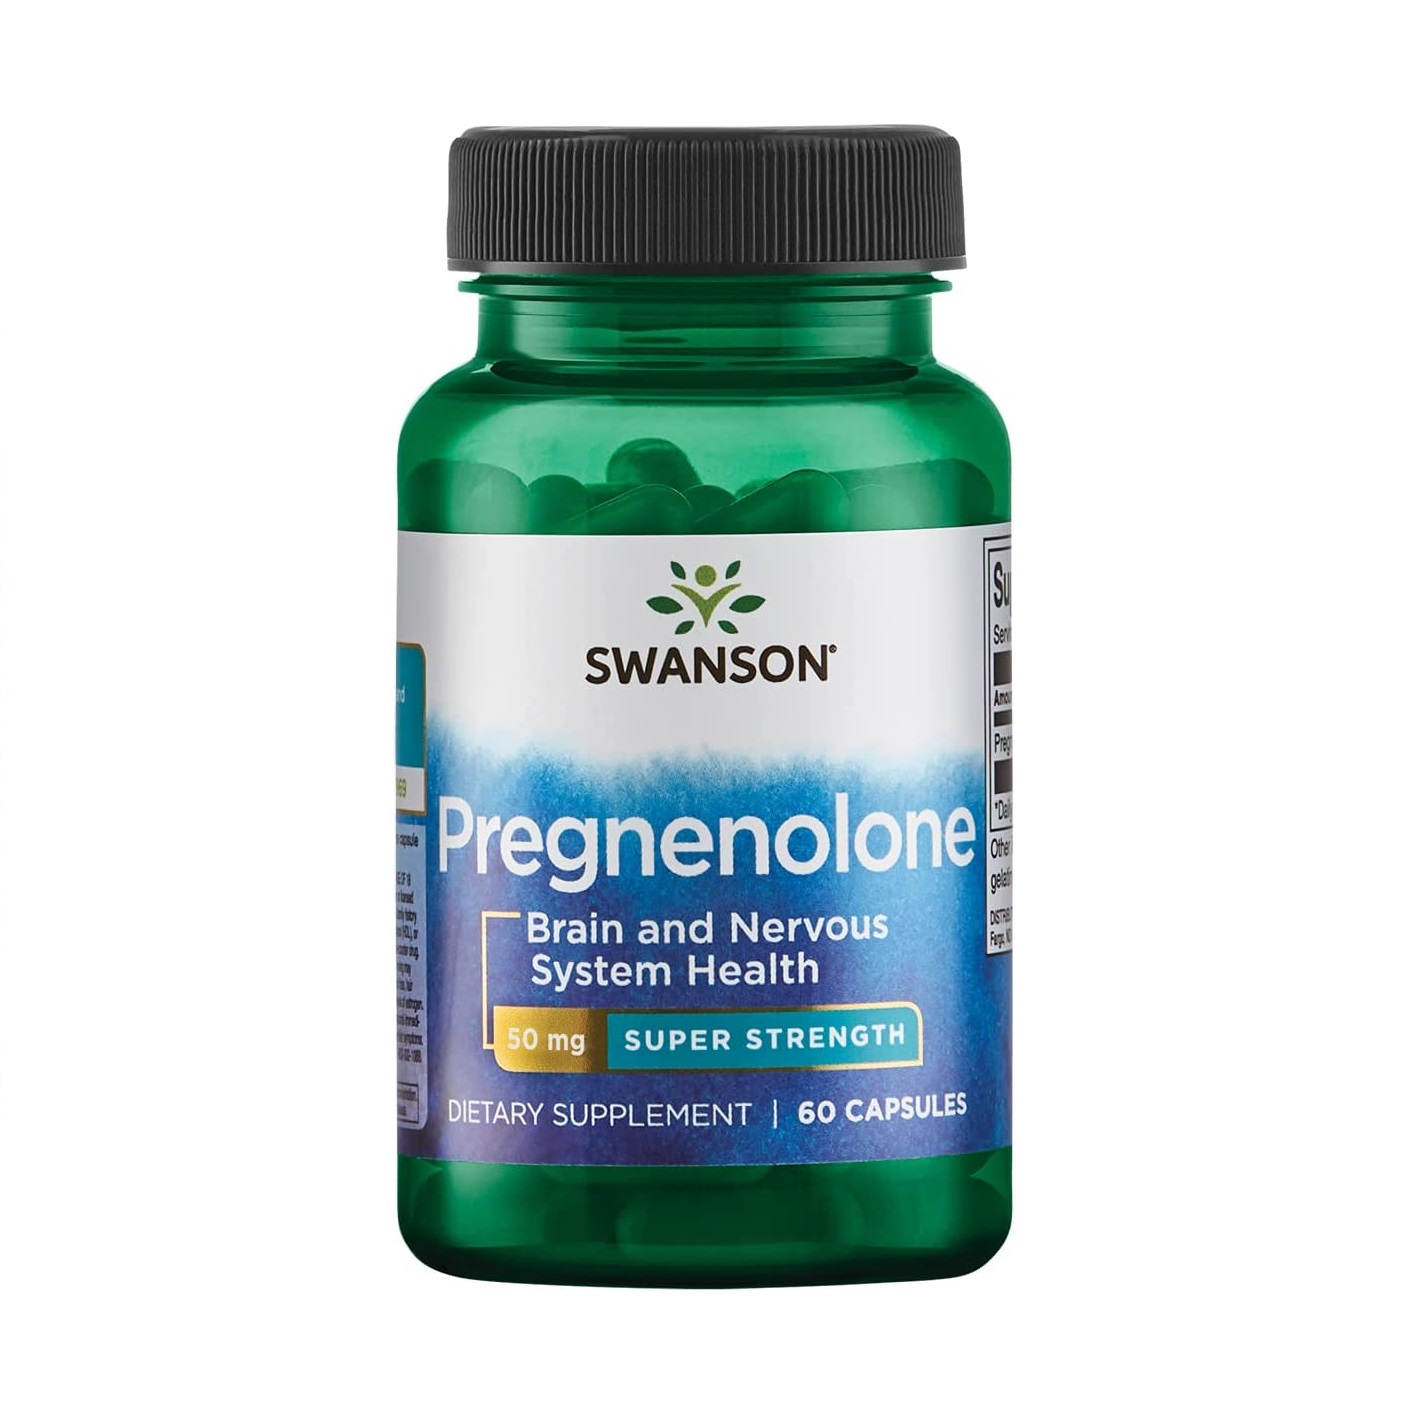 Swanson Pregnenolone 50mg Super Strength - Viên uống hỗ trợ chức năng não